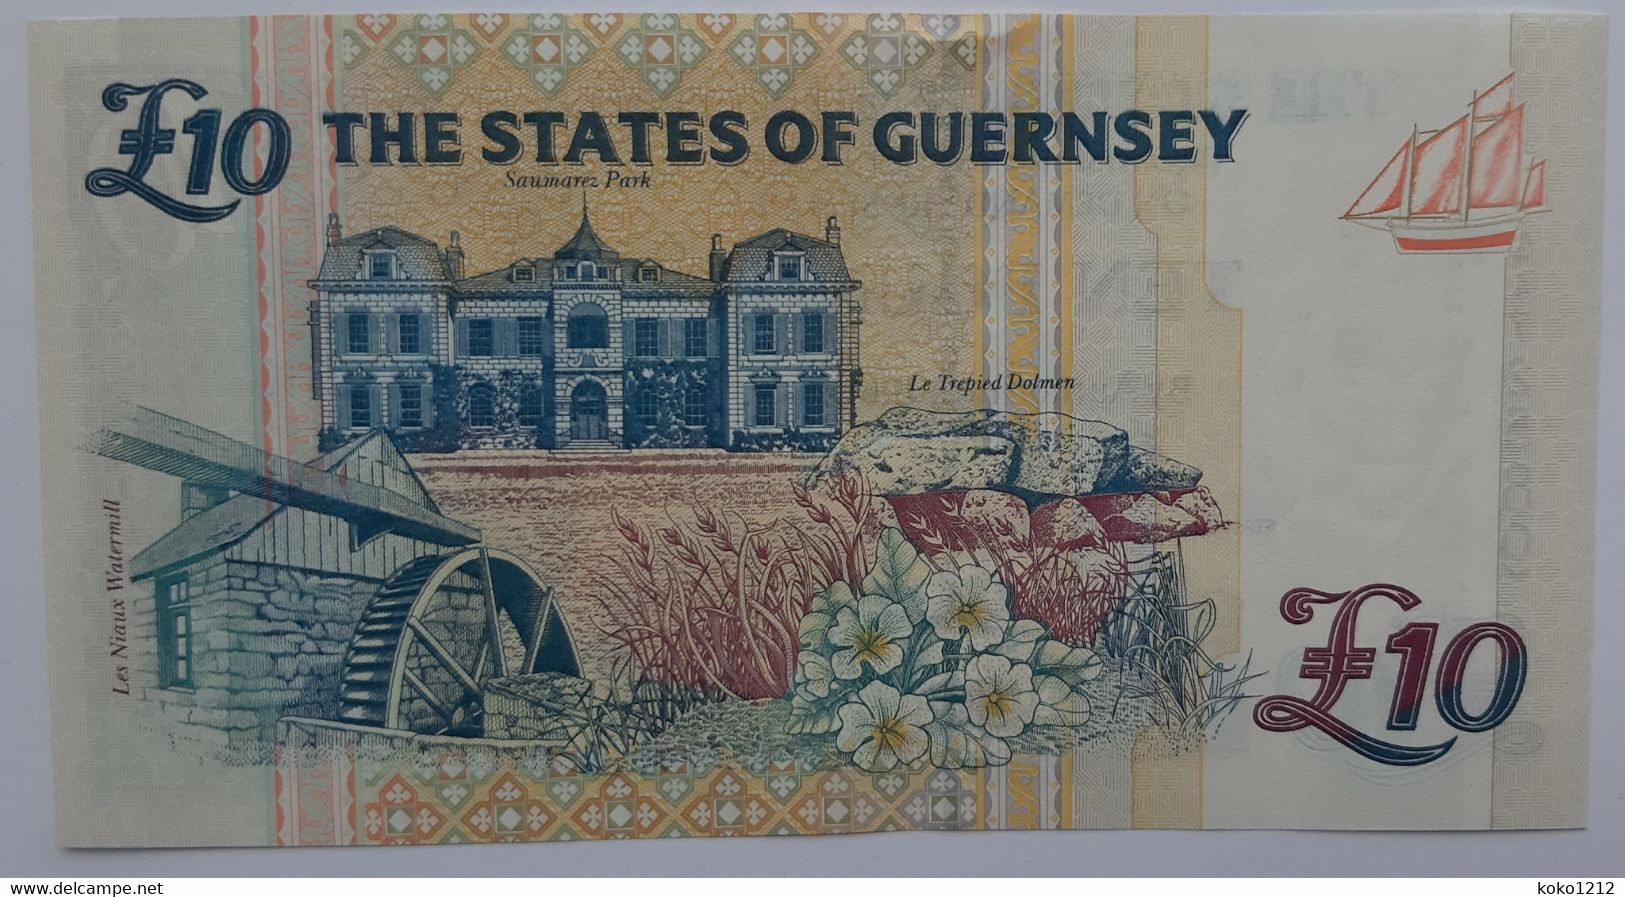 Guernsey 10 Pounds N.D. P57a UNC - Guernsey